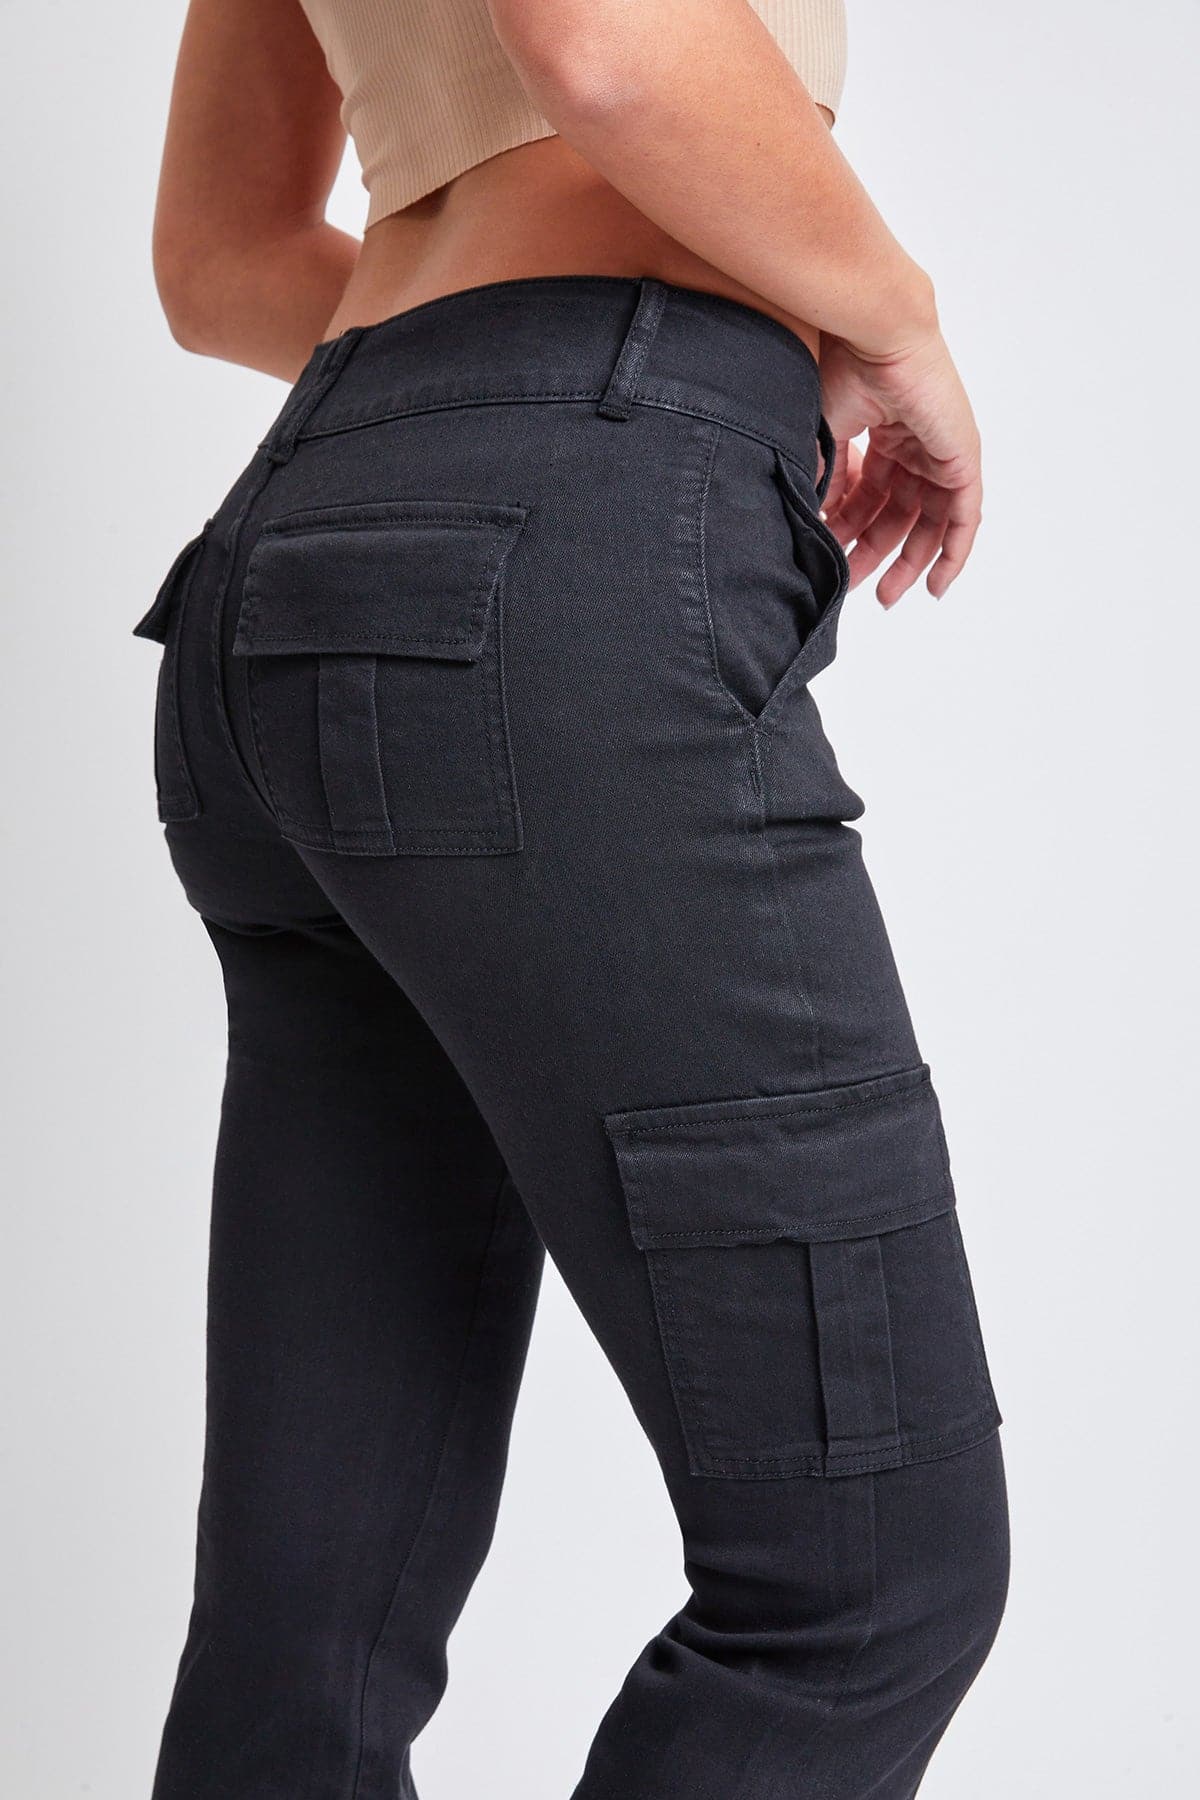 Women's Low Rise Cargo Flare Jean